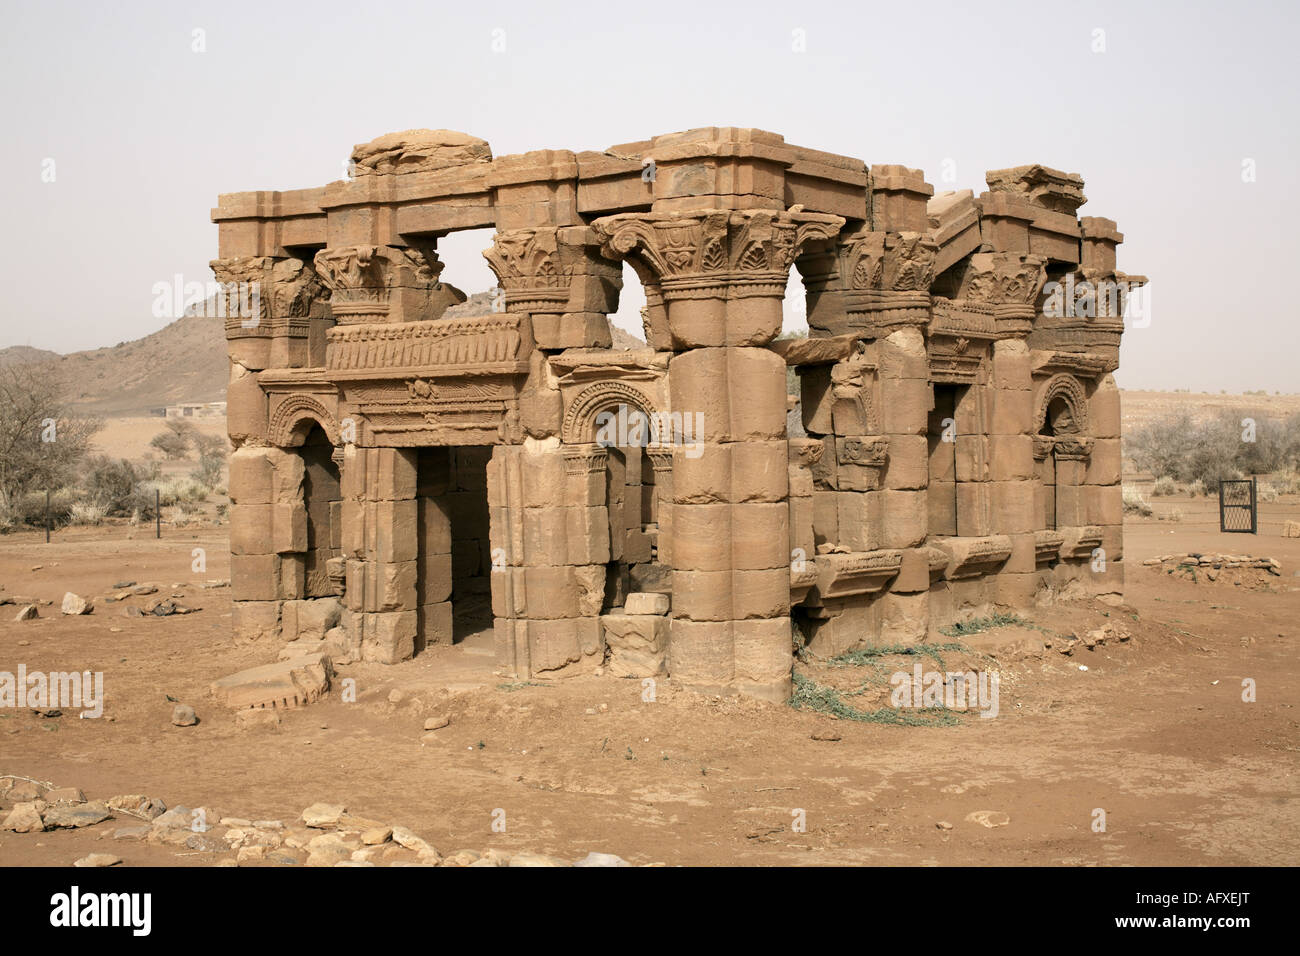 Il chiosco, parte dell'Meroitic templi di Naqa, Sudan, Africa Foto Stock